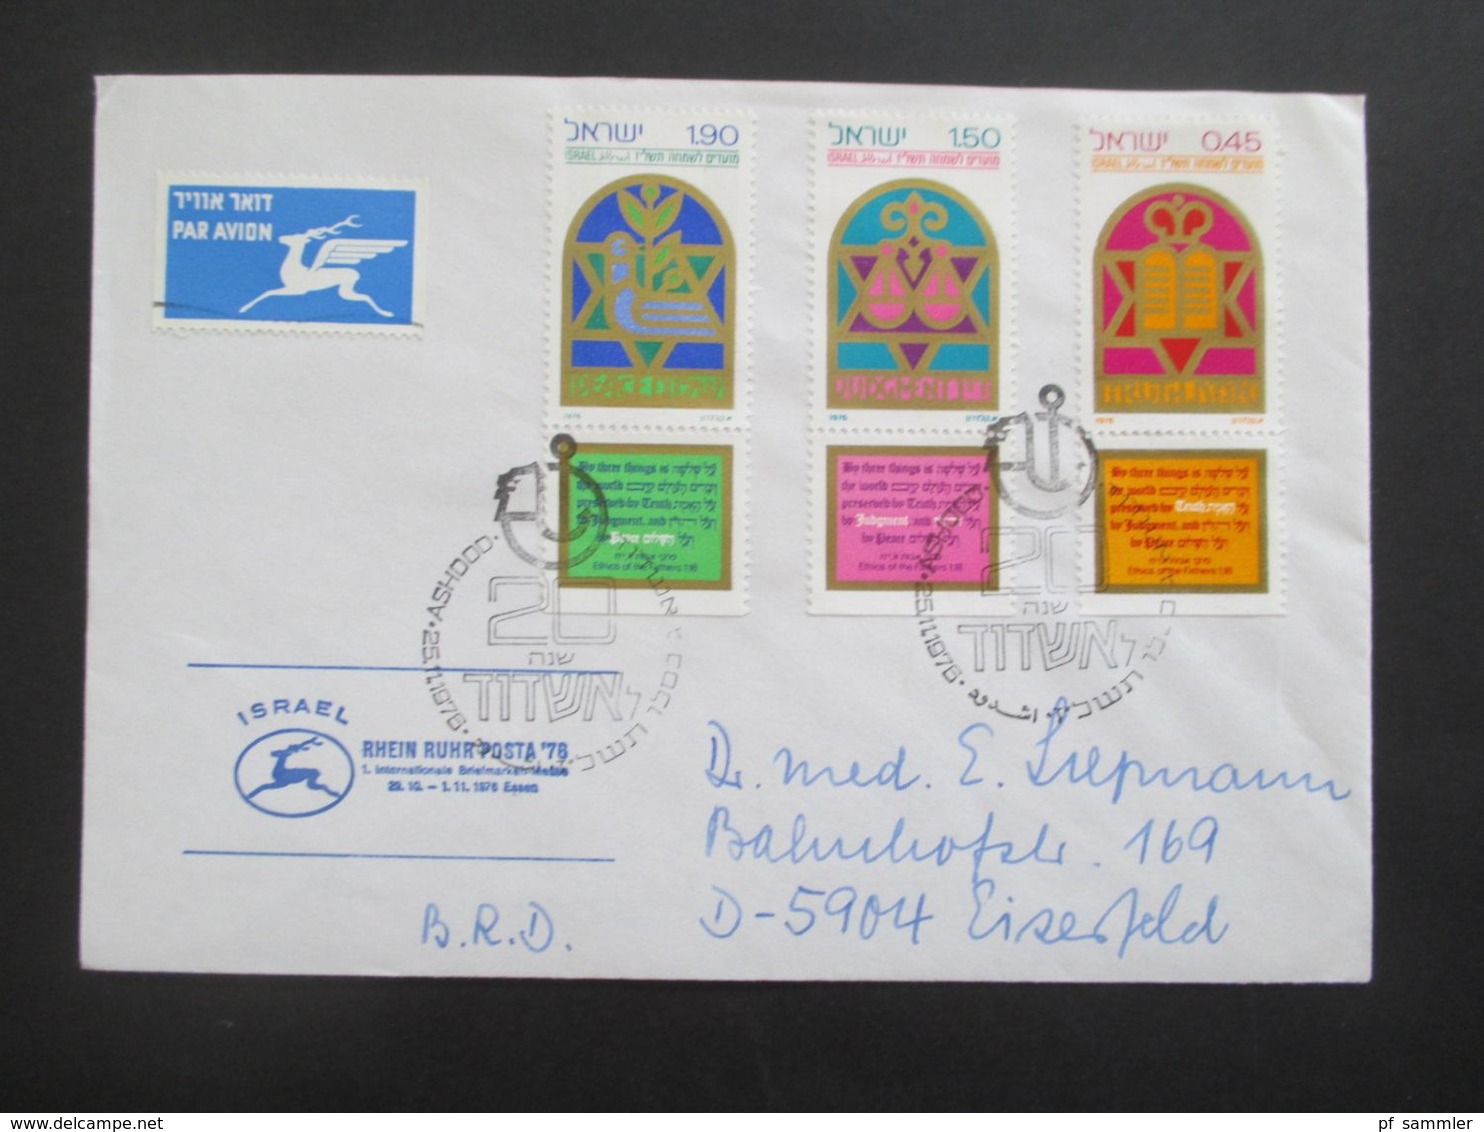 Israel 1964 - 79 kleiner Belegeposten 10 Stk. Sammlerbelege / Luftpost teilweise mit Tab. Luftpost / Einschreiben